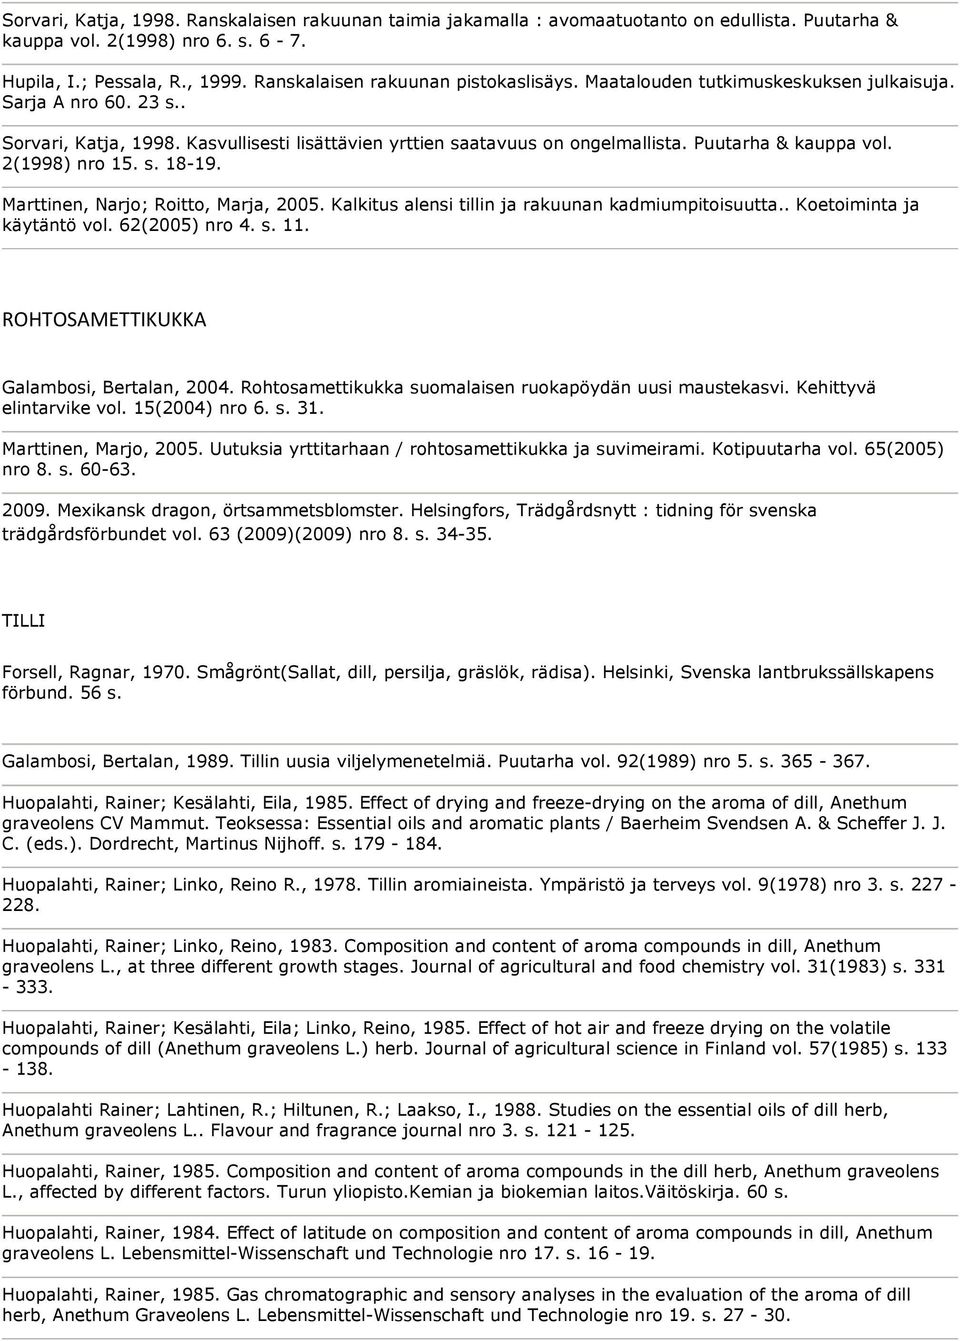 Puutarha & kauppa vol. 2(1998) nro 15. s. 18-19. Marttinen, Narjo; Roitto, Marja, 2005. Kalkitus alensi tillin ja rakuunan kadmiumpitoisuutta.. Koetoiminta ja käytäntö vol. 62(2005) nro 4. s. 11.